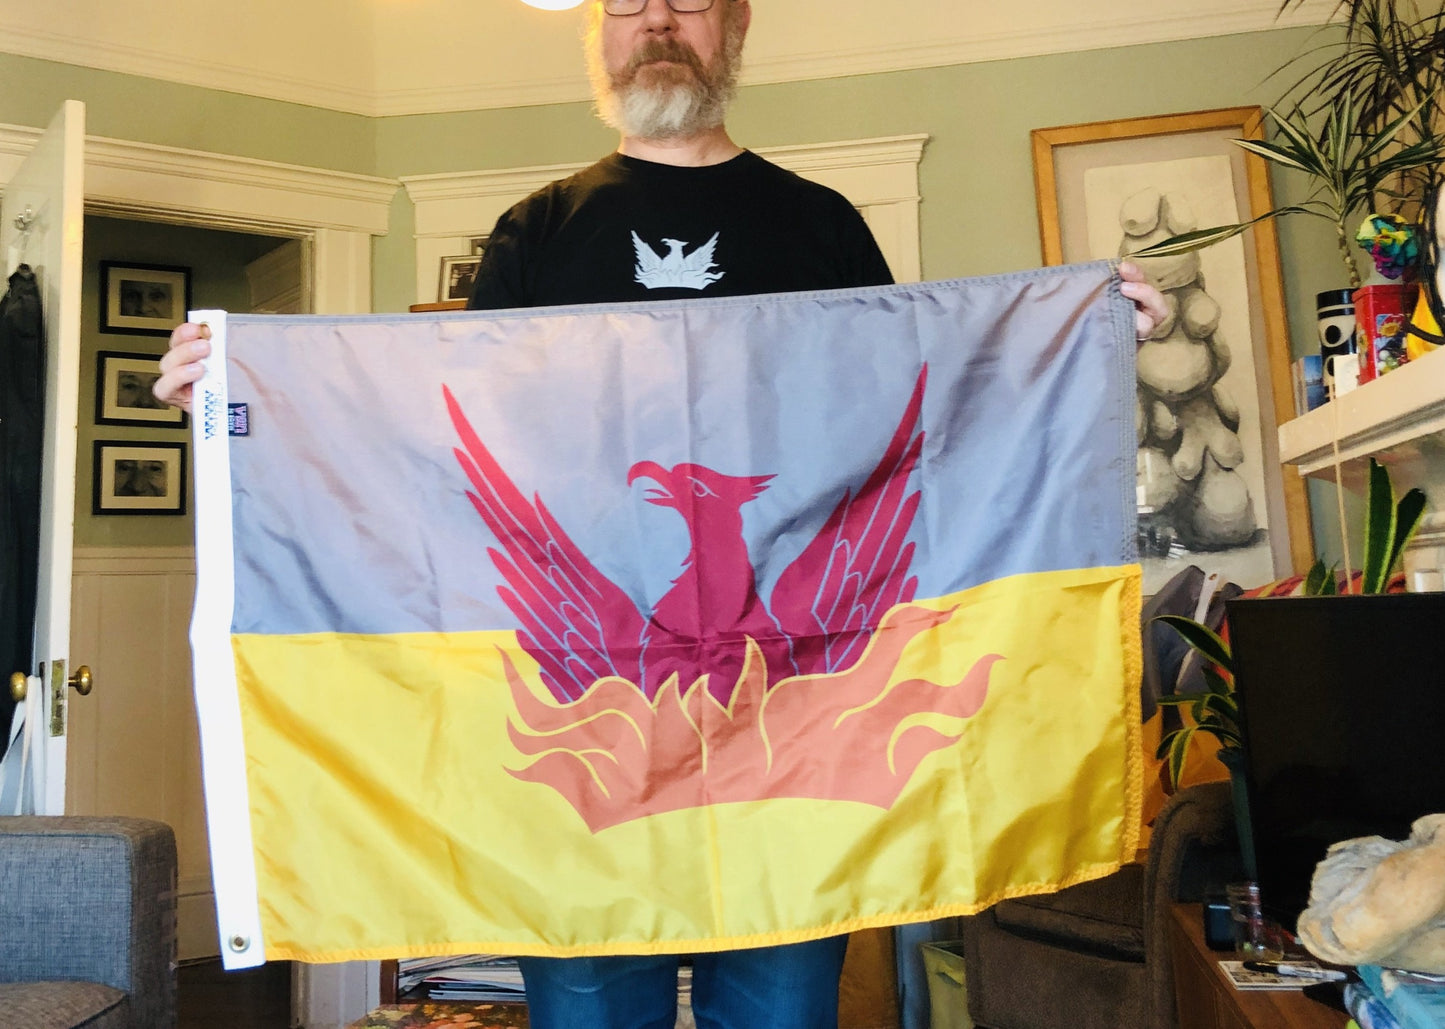 Medium - 2 ft x 3 ft SF Fog & Gold Flag